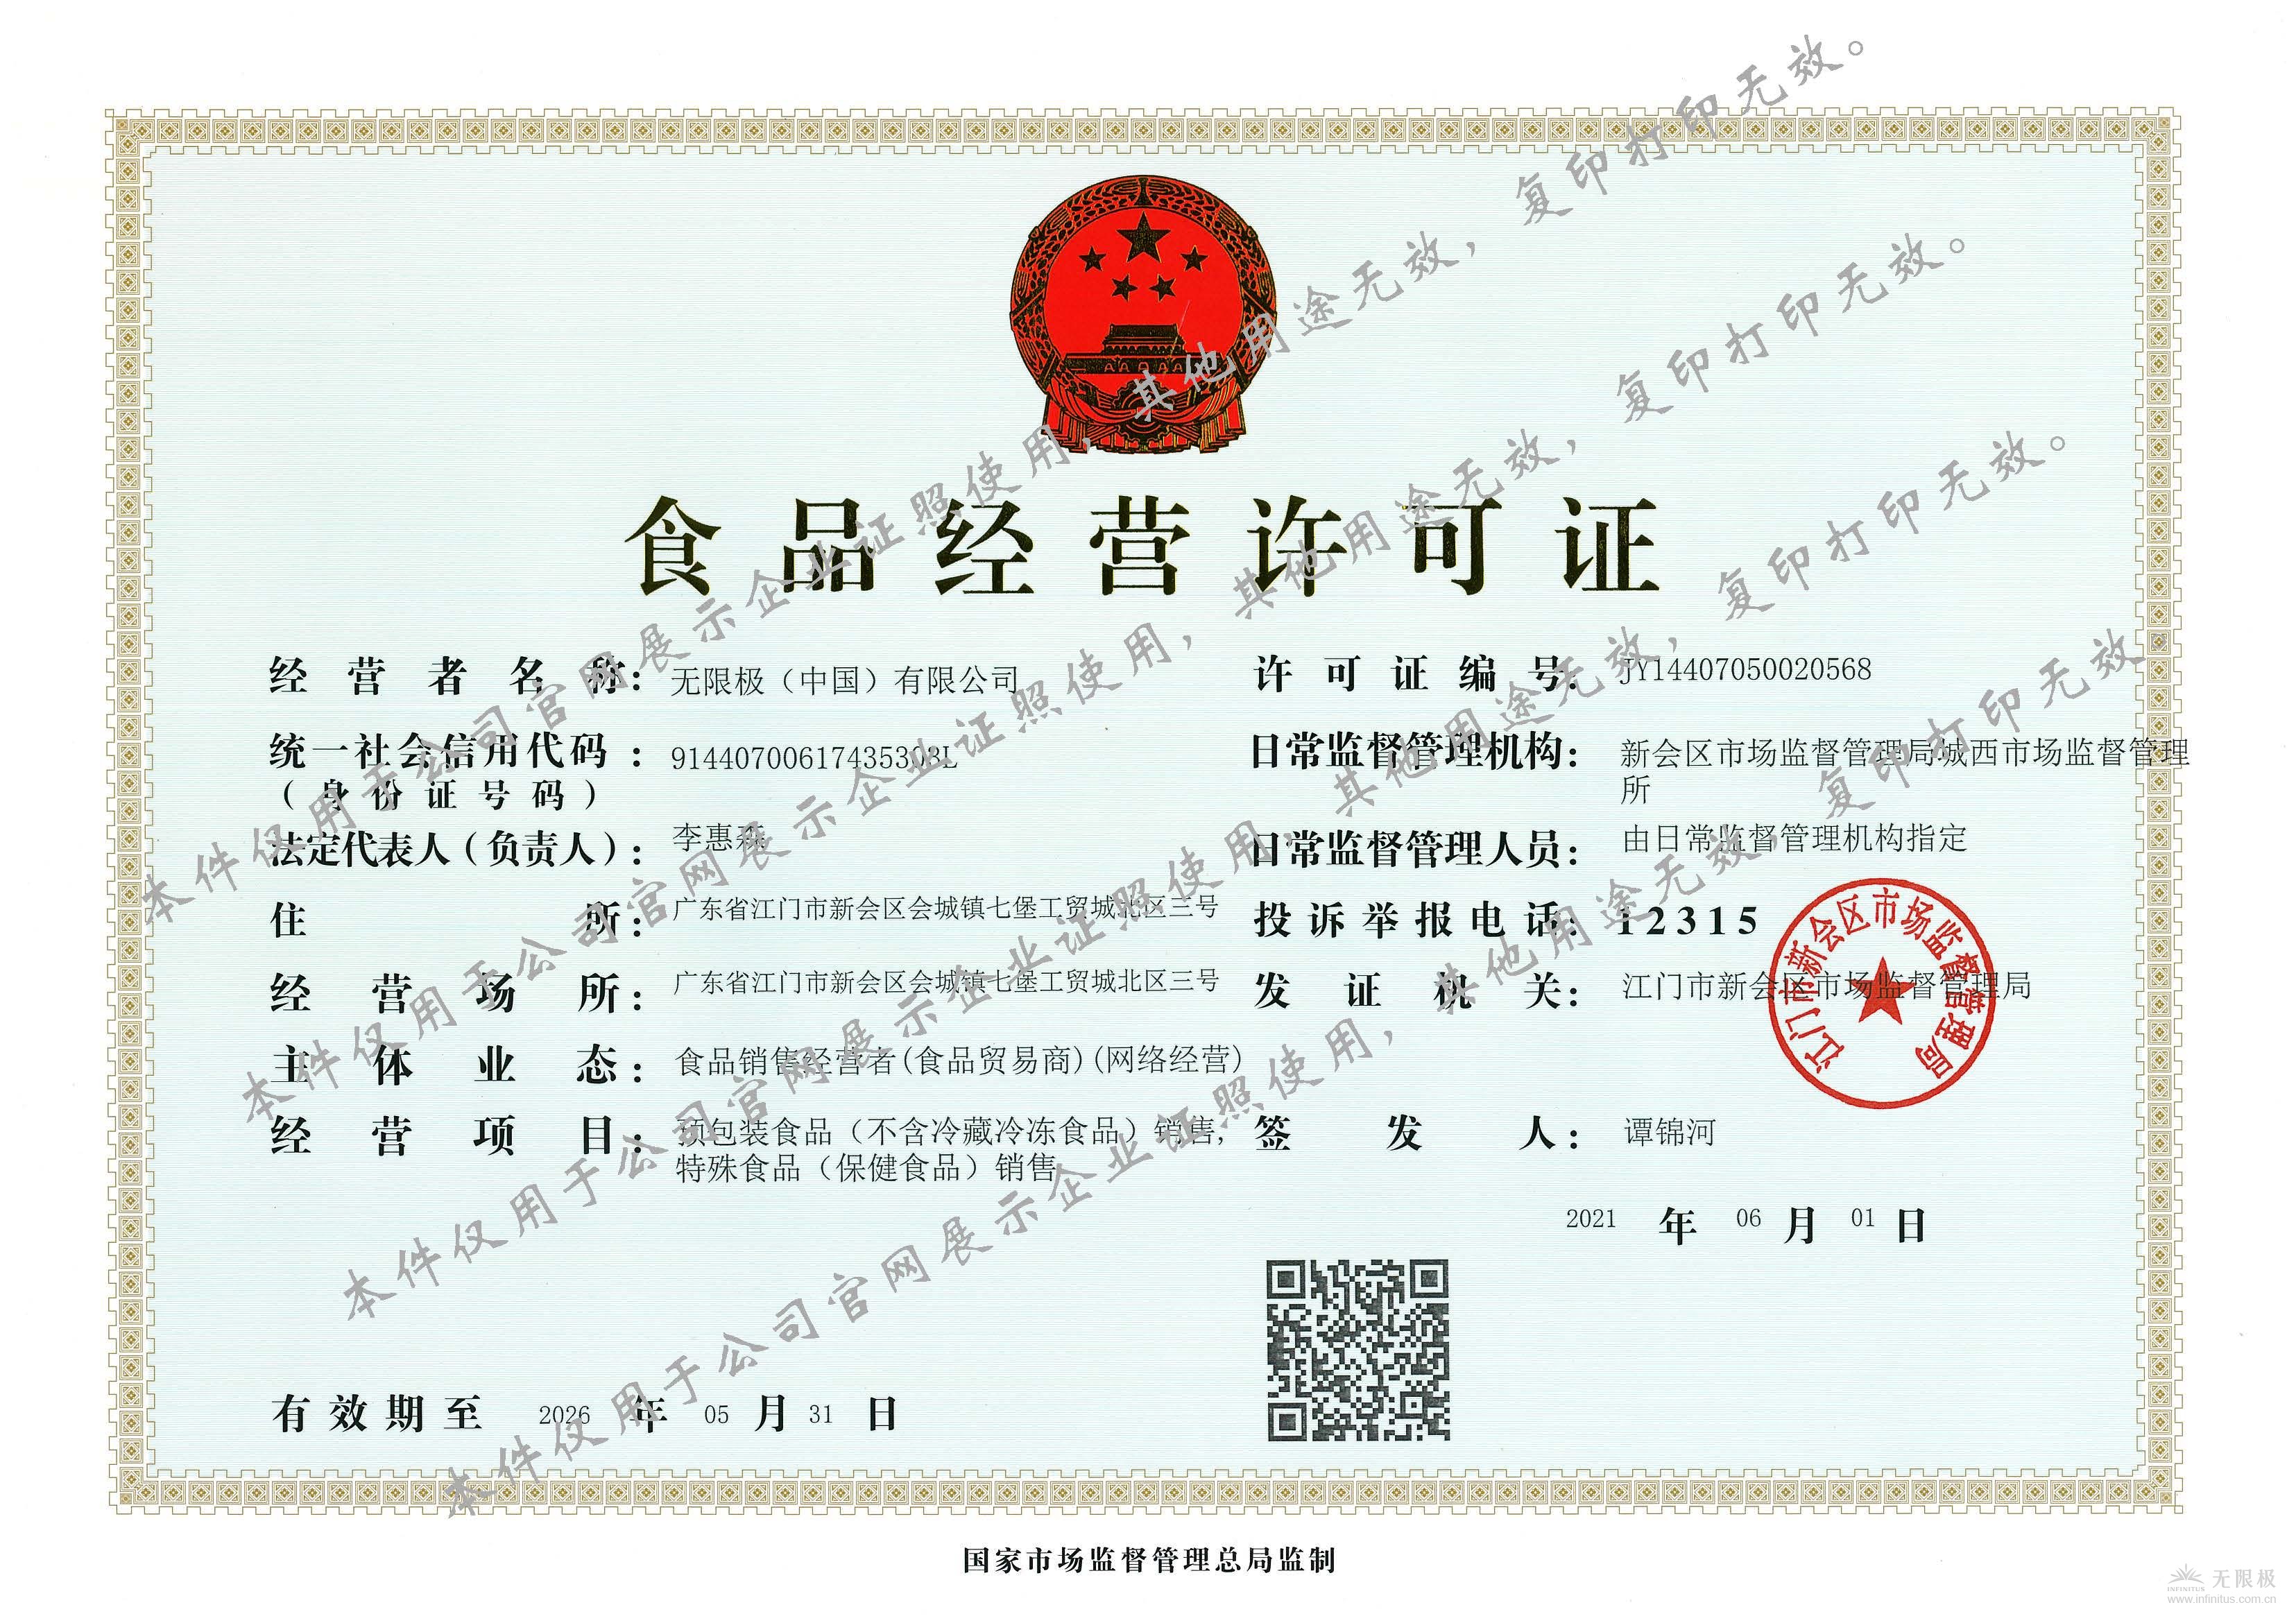 無限極（中國）有限公司食品經營許可證正本